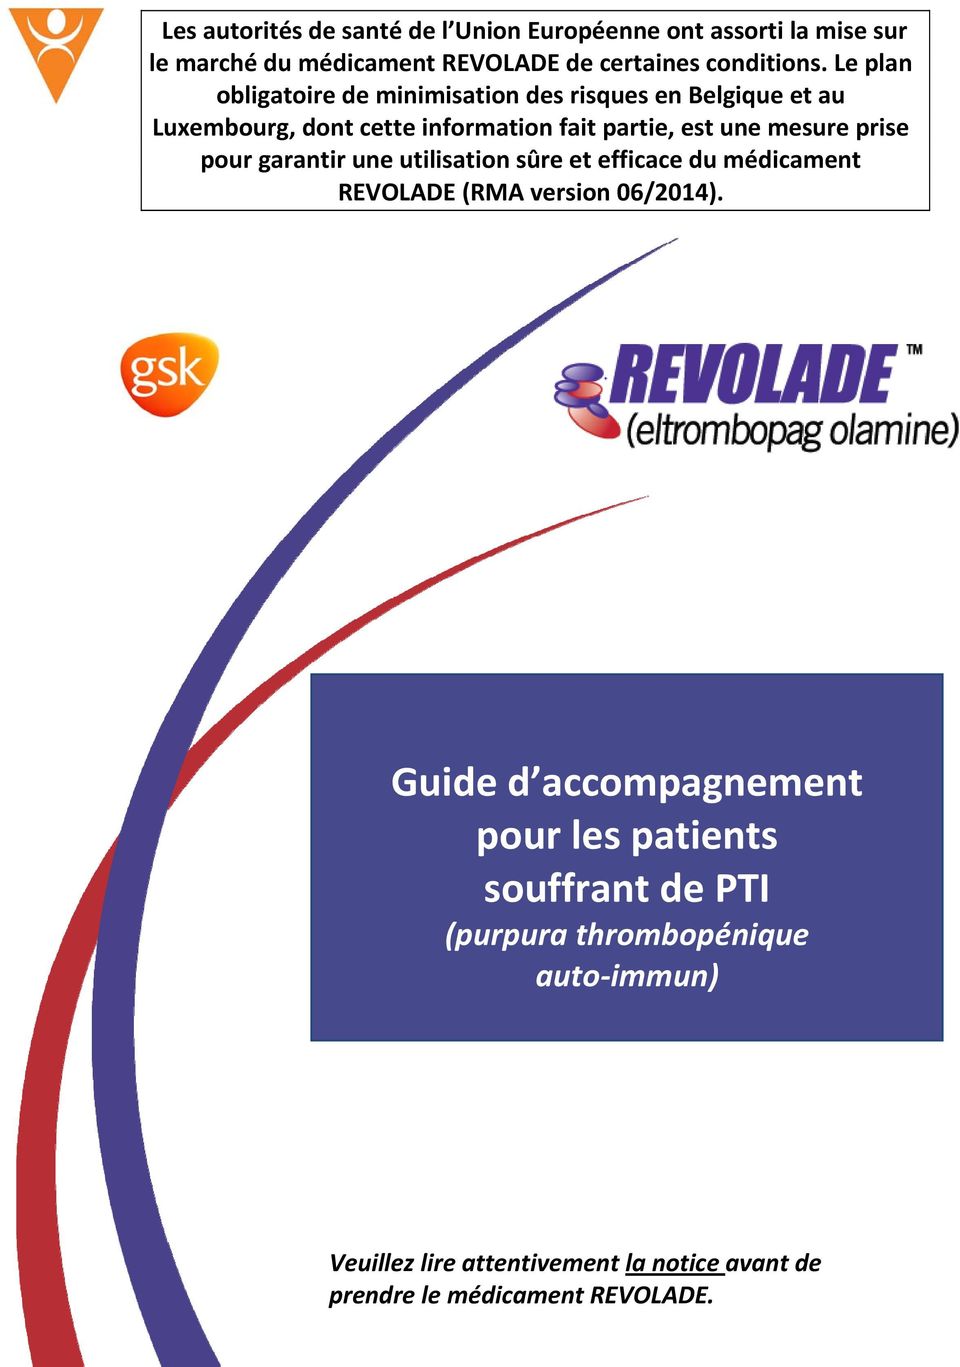 prise pour garantir une utilisation sûre et efficace du médicament REVOLADE (RMA version 06/2014).